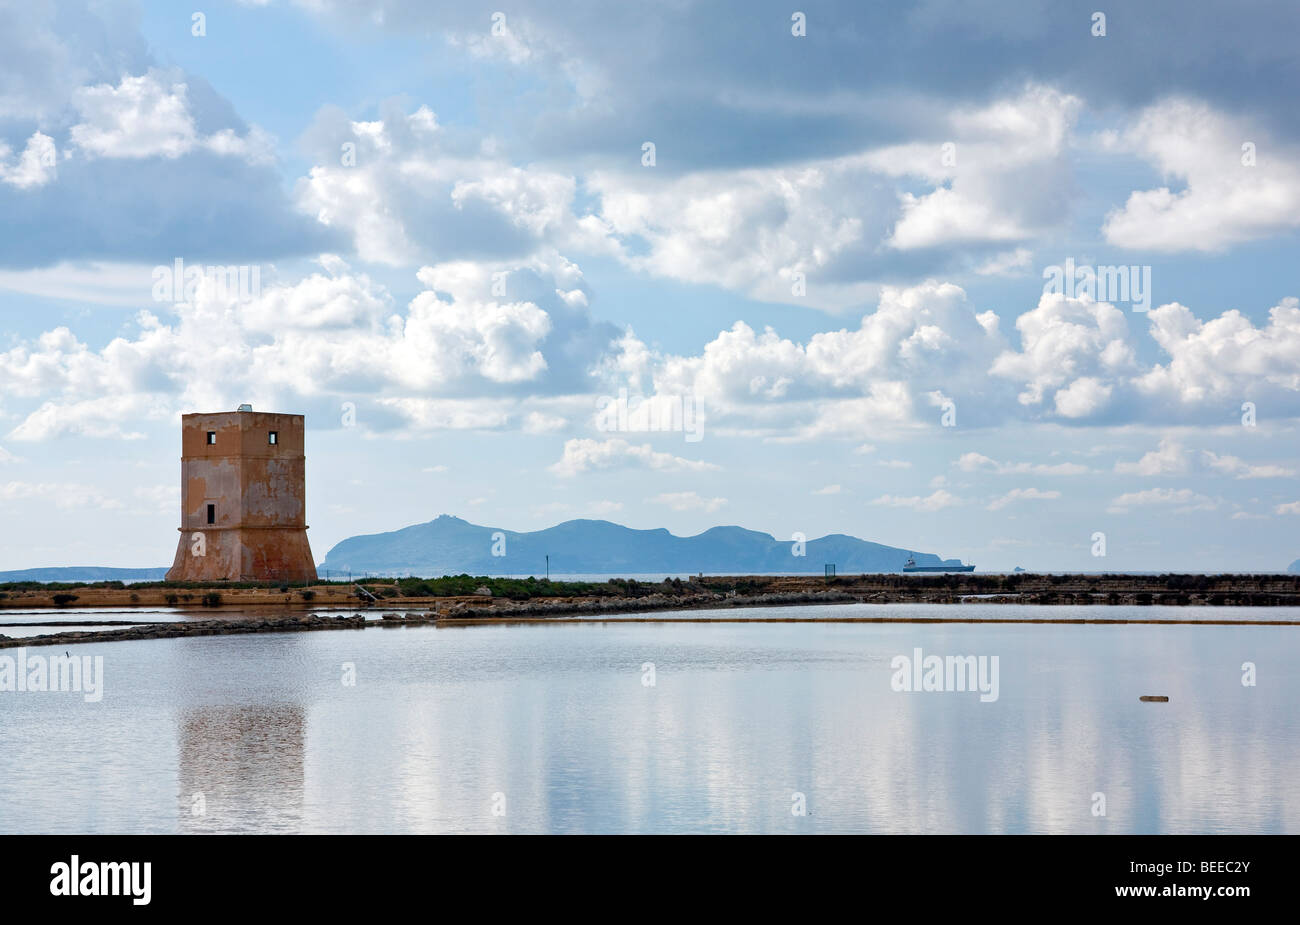 Bacino di acqua salata e una torre di guardia, salines vicino a Trapani, Sicilia, Italia, Europa meridionale Foto Stock